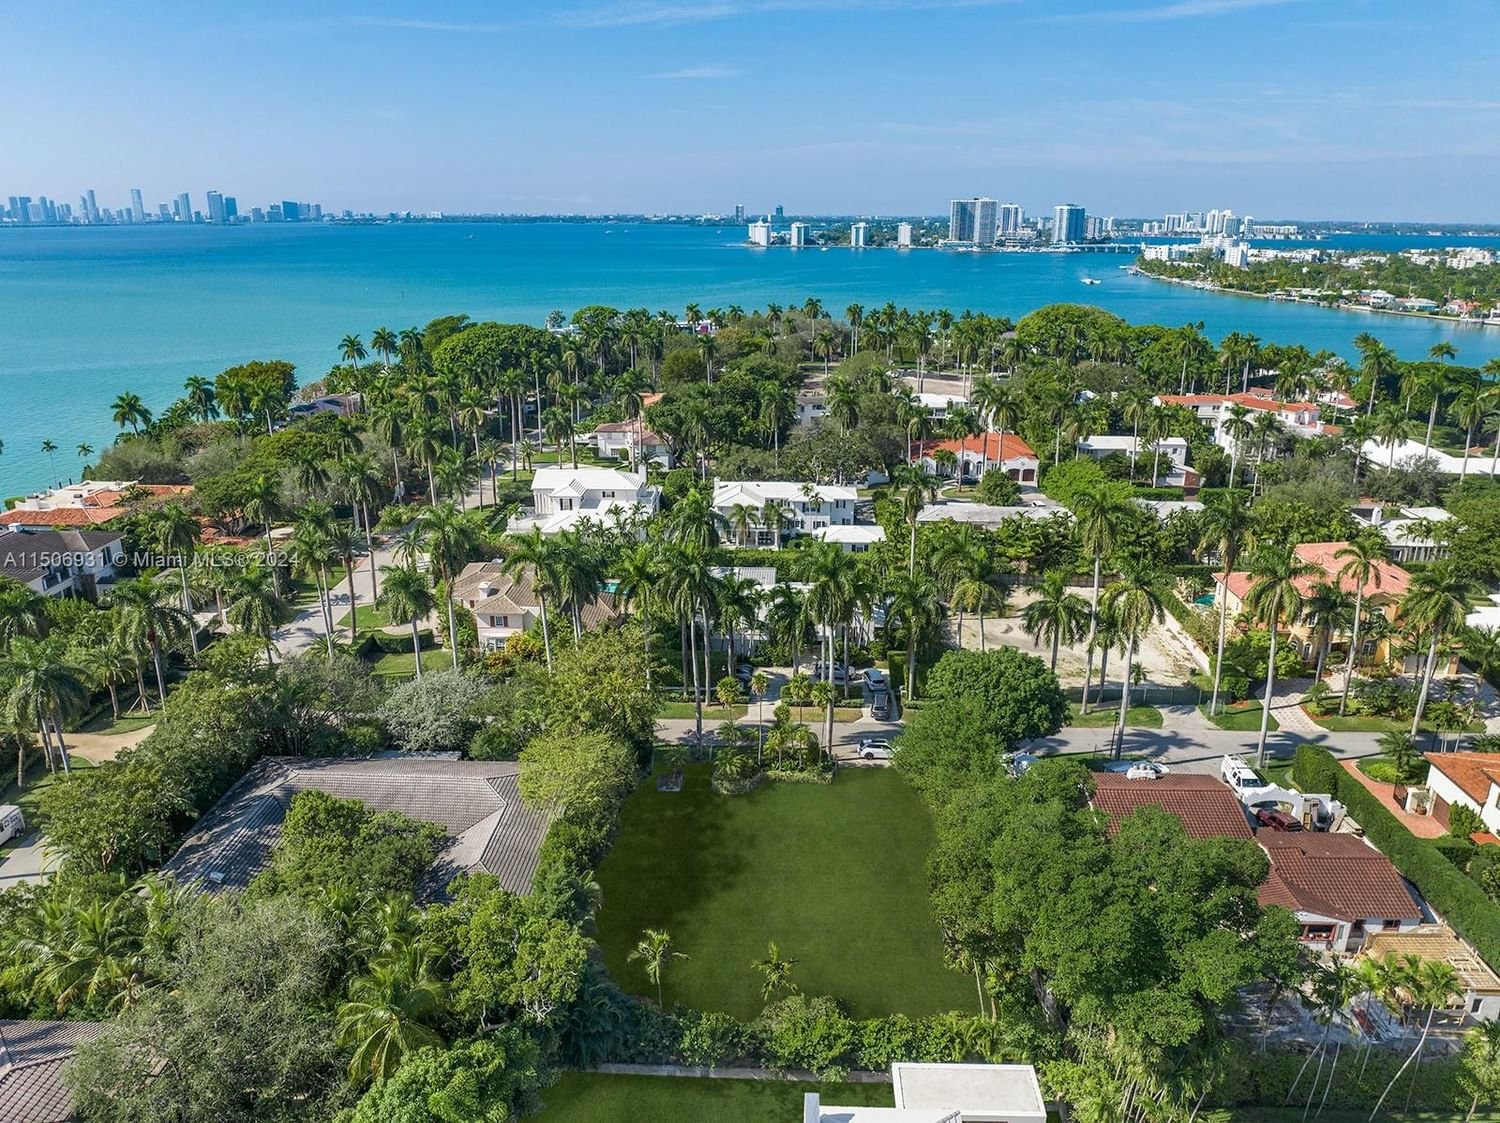 Real estate property located at 6635 Windsor Ln, Miami-Dade County, LA GORCE ISLAND, Miami Beach, FL